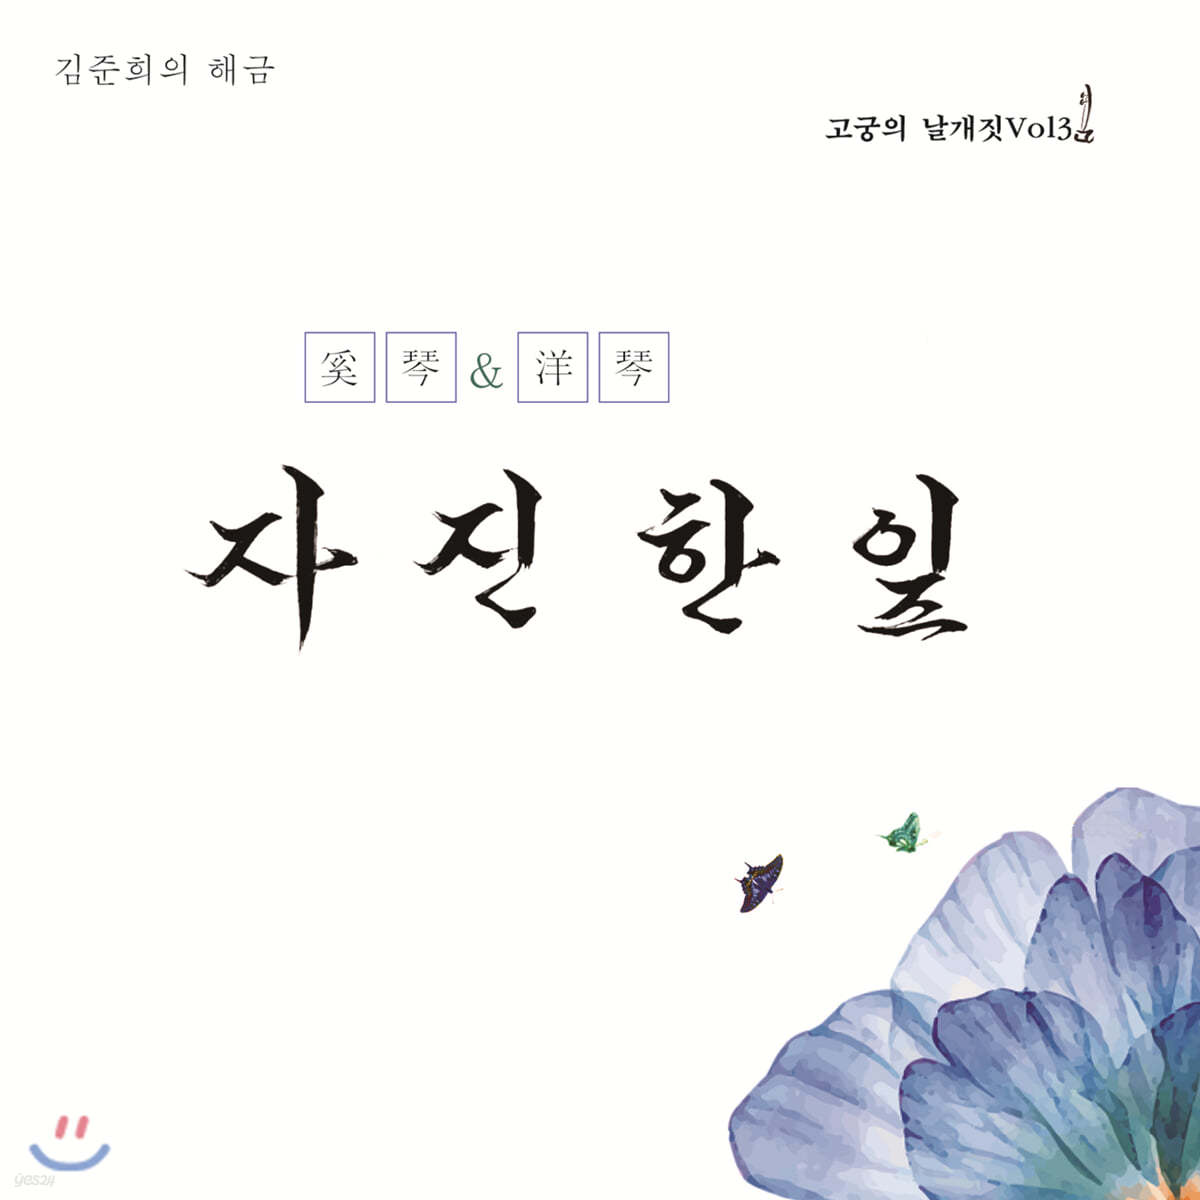 김준희 - 고궁의 날갯짓 Vol.3 : 자진한잎 